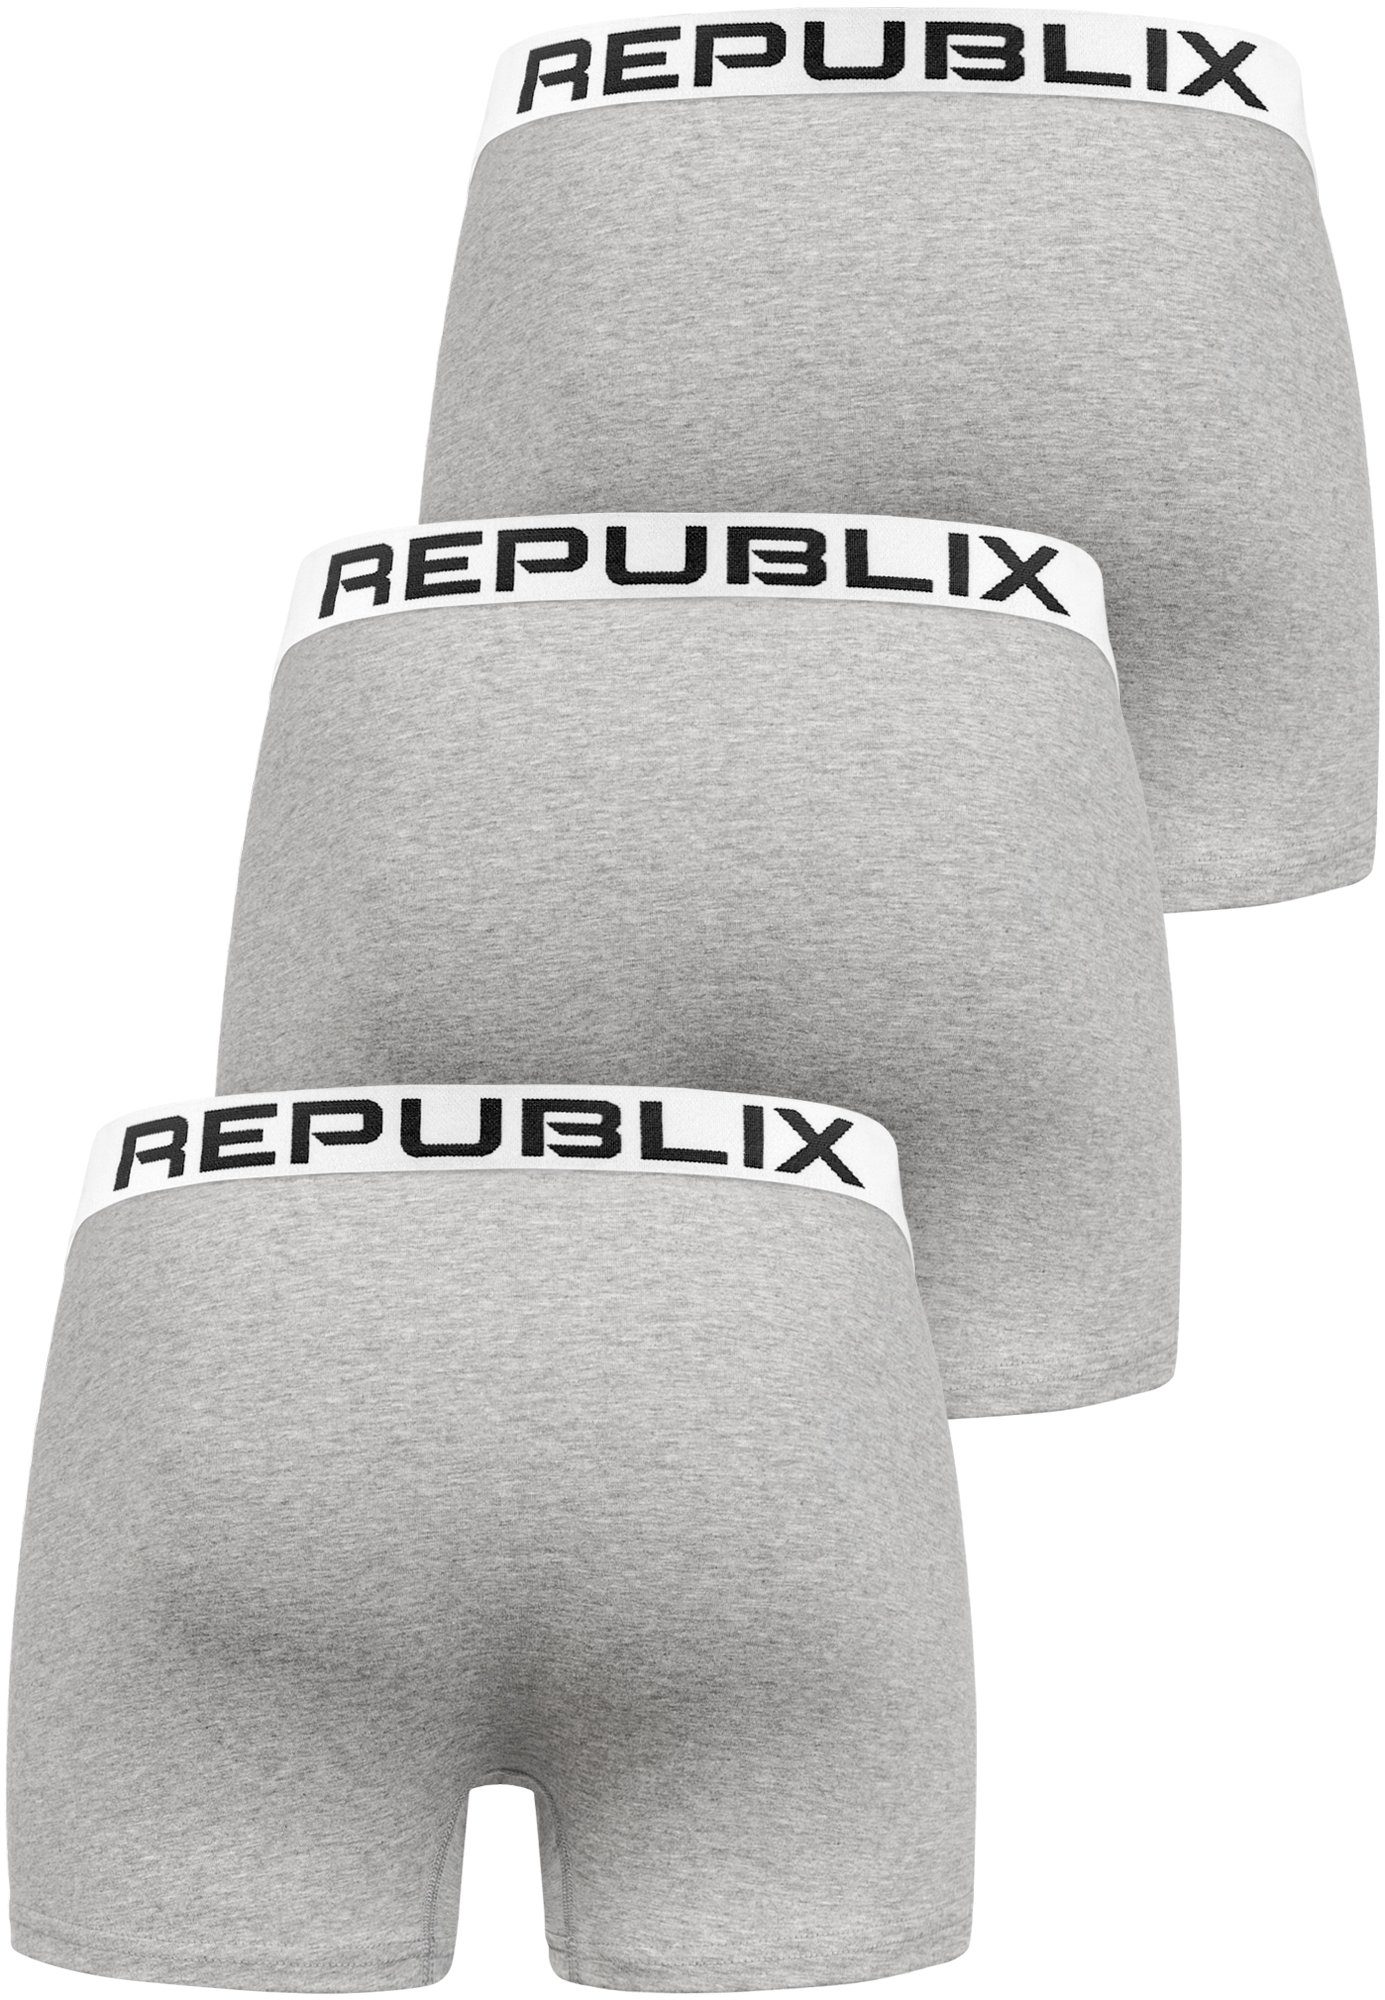 REPUBLIX Boxershorts DON (3er-Pack) Herren Grau/Weiß Männer Unterhose Unterwäsche Baumwolle